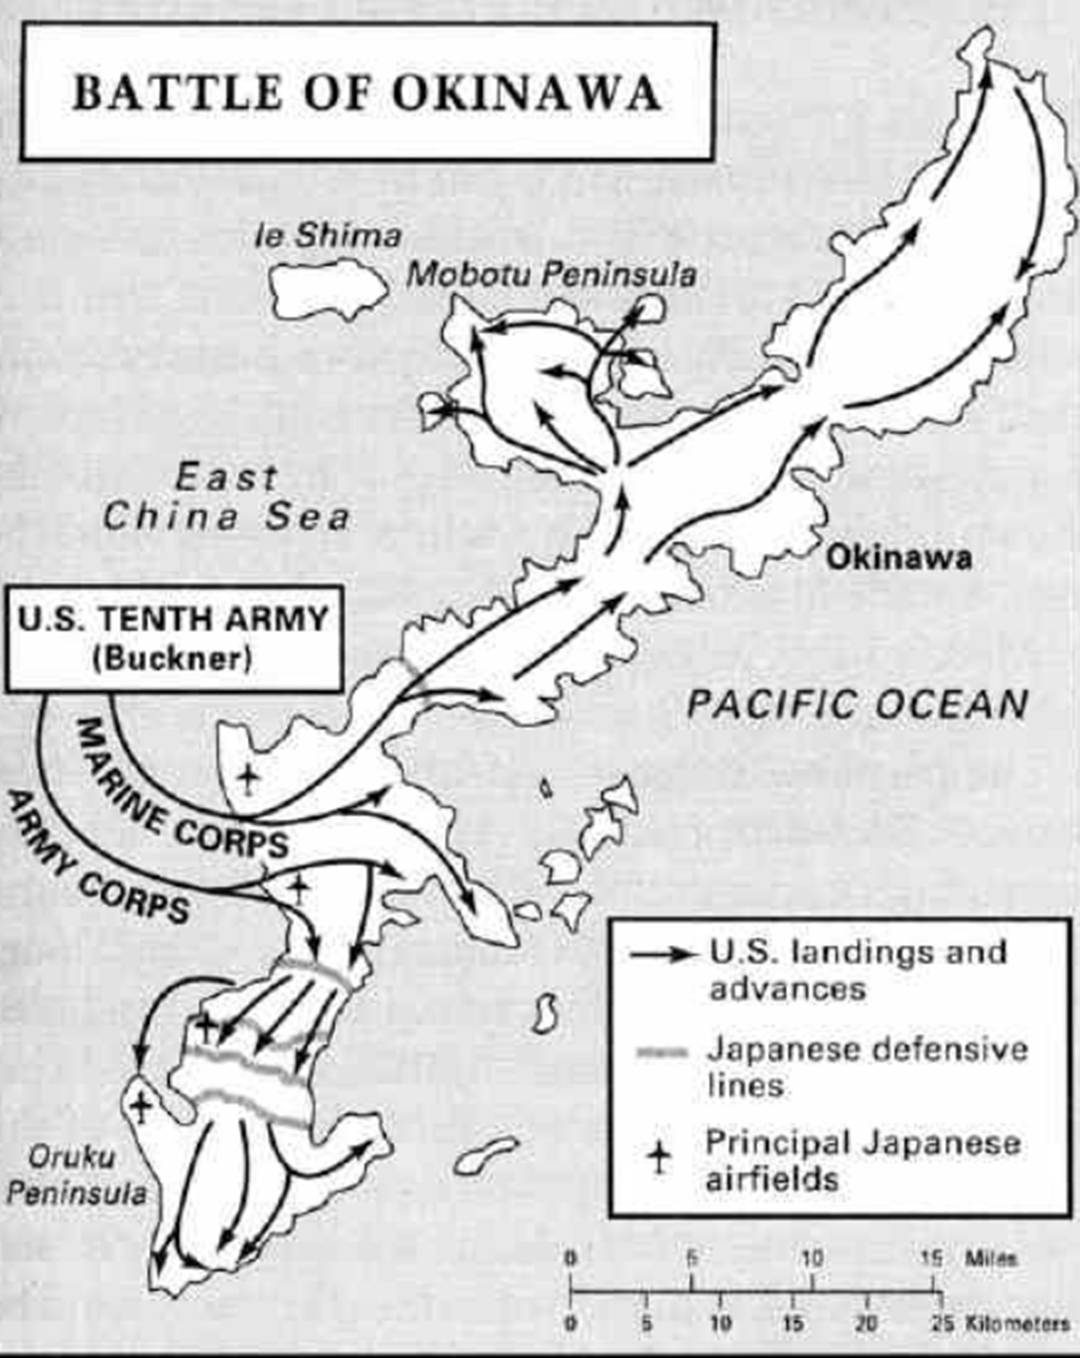 原创冲绳岛战役:二战史上最残酷的战役之一,美军士兵称这是一场噩梦